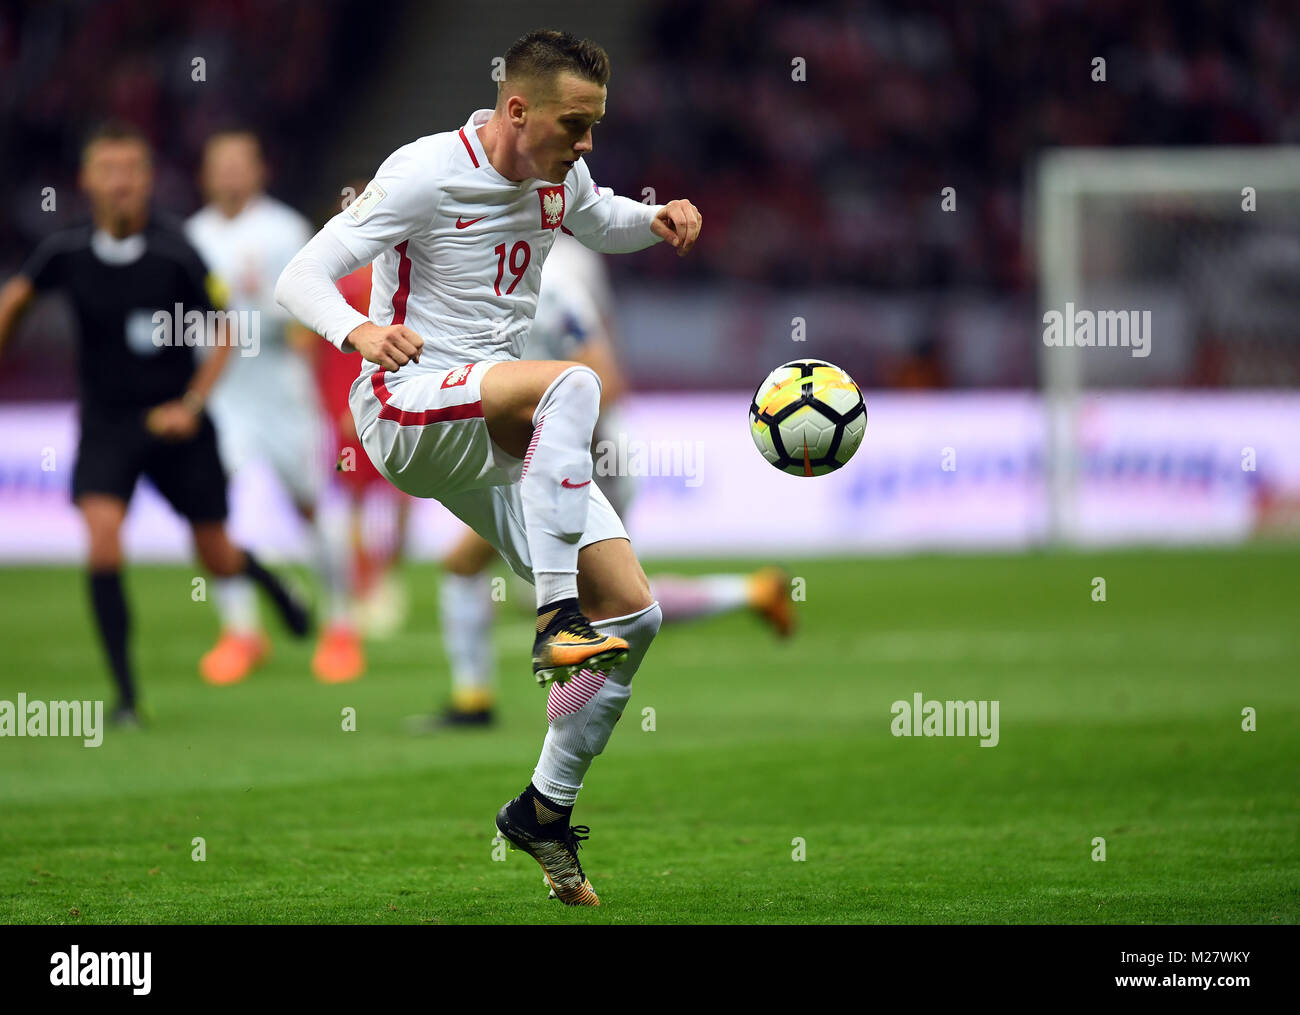 8 Oktober, 2017 - Warschau, Polen: Fußball WM 2018 Qualifikation Rusia Polen - Montenegro o/p Piotr Zielinski (Polen) Stockfoto